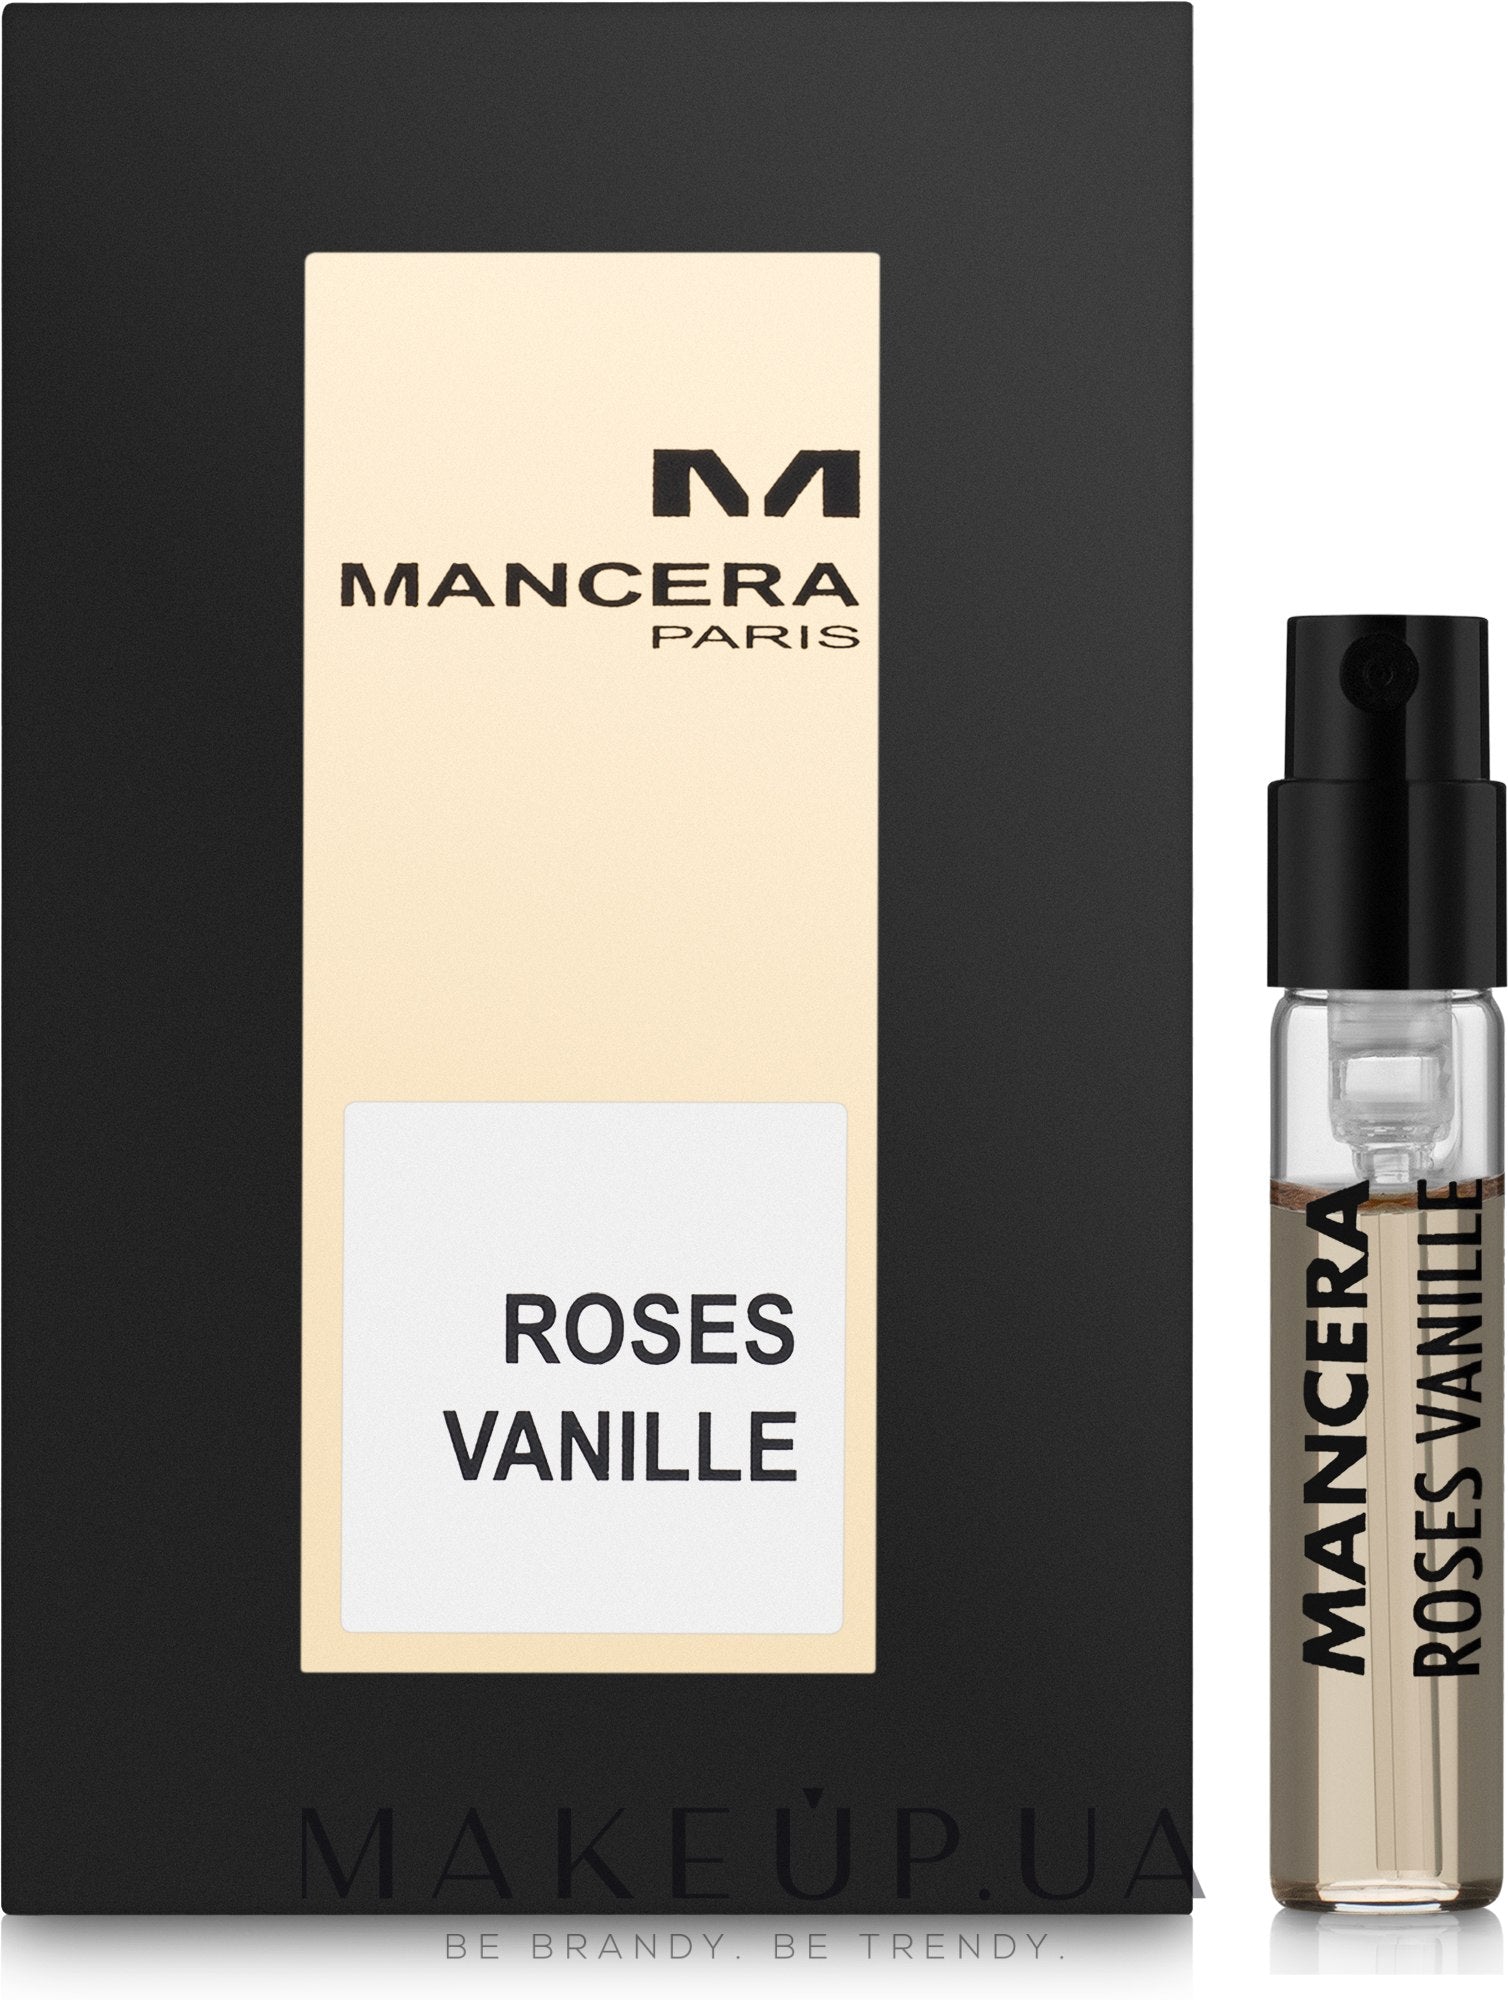 Mancera Roses Vanille próbki-Mancera Roses Vanille-Mancera-2ml oficjalna próbka-creedpróbki perfum